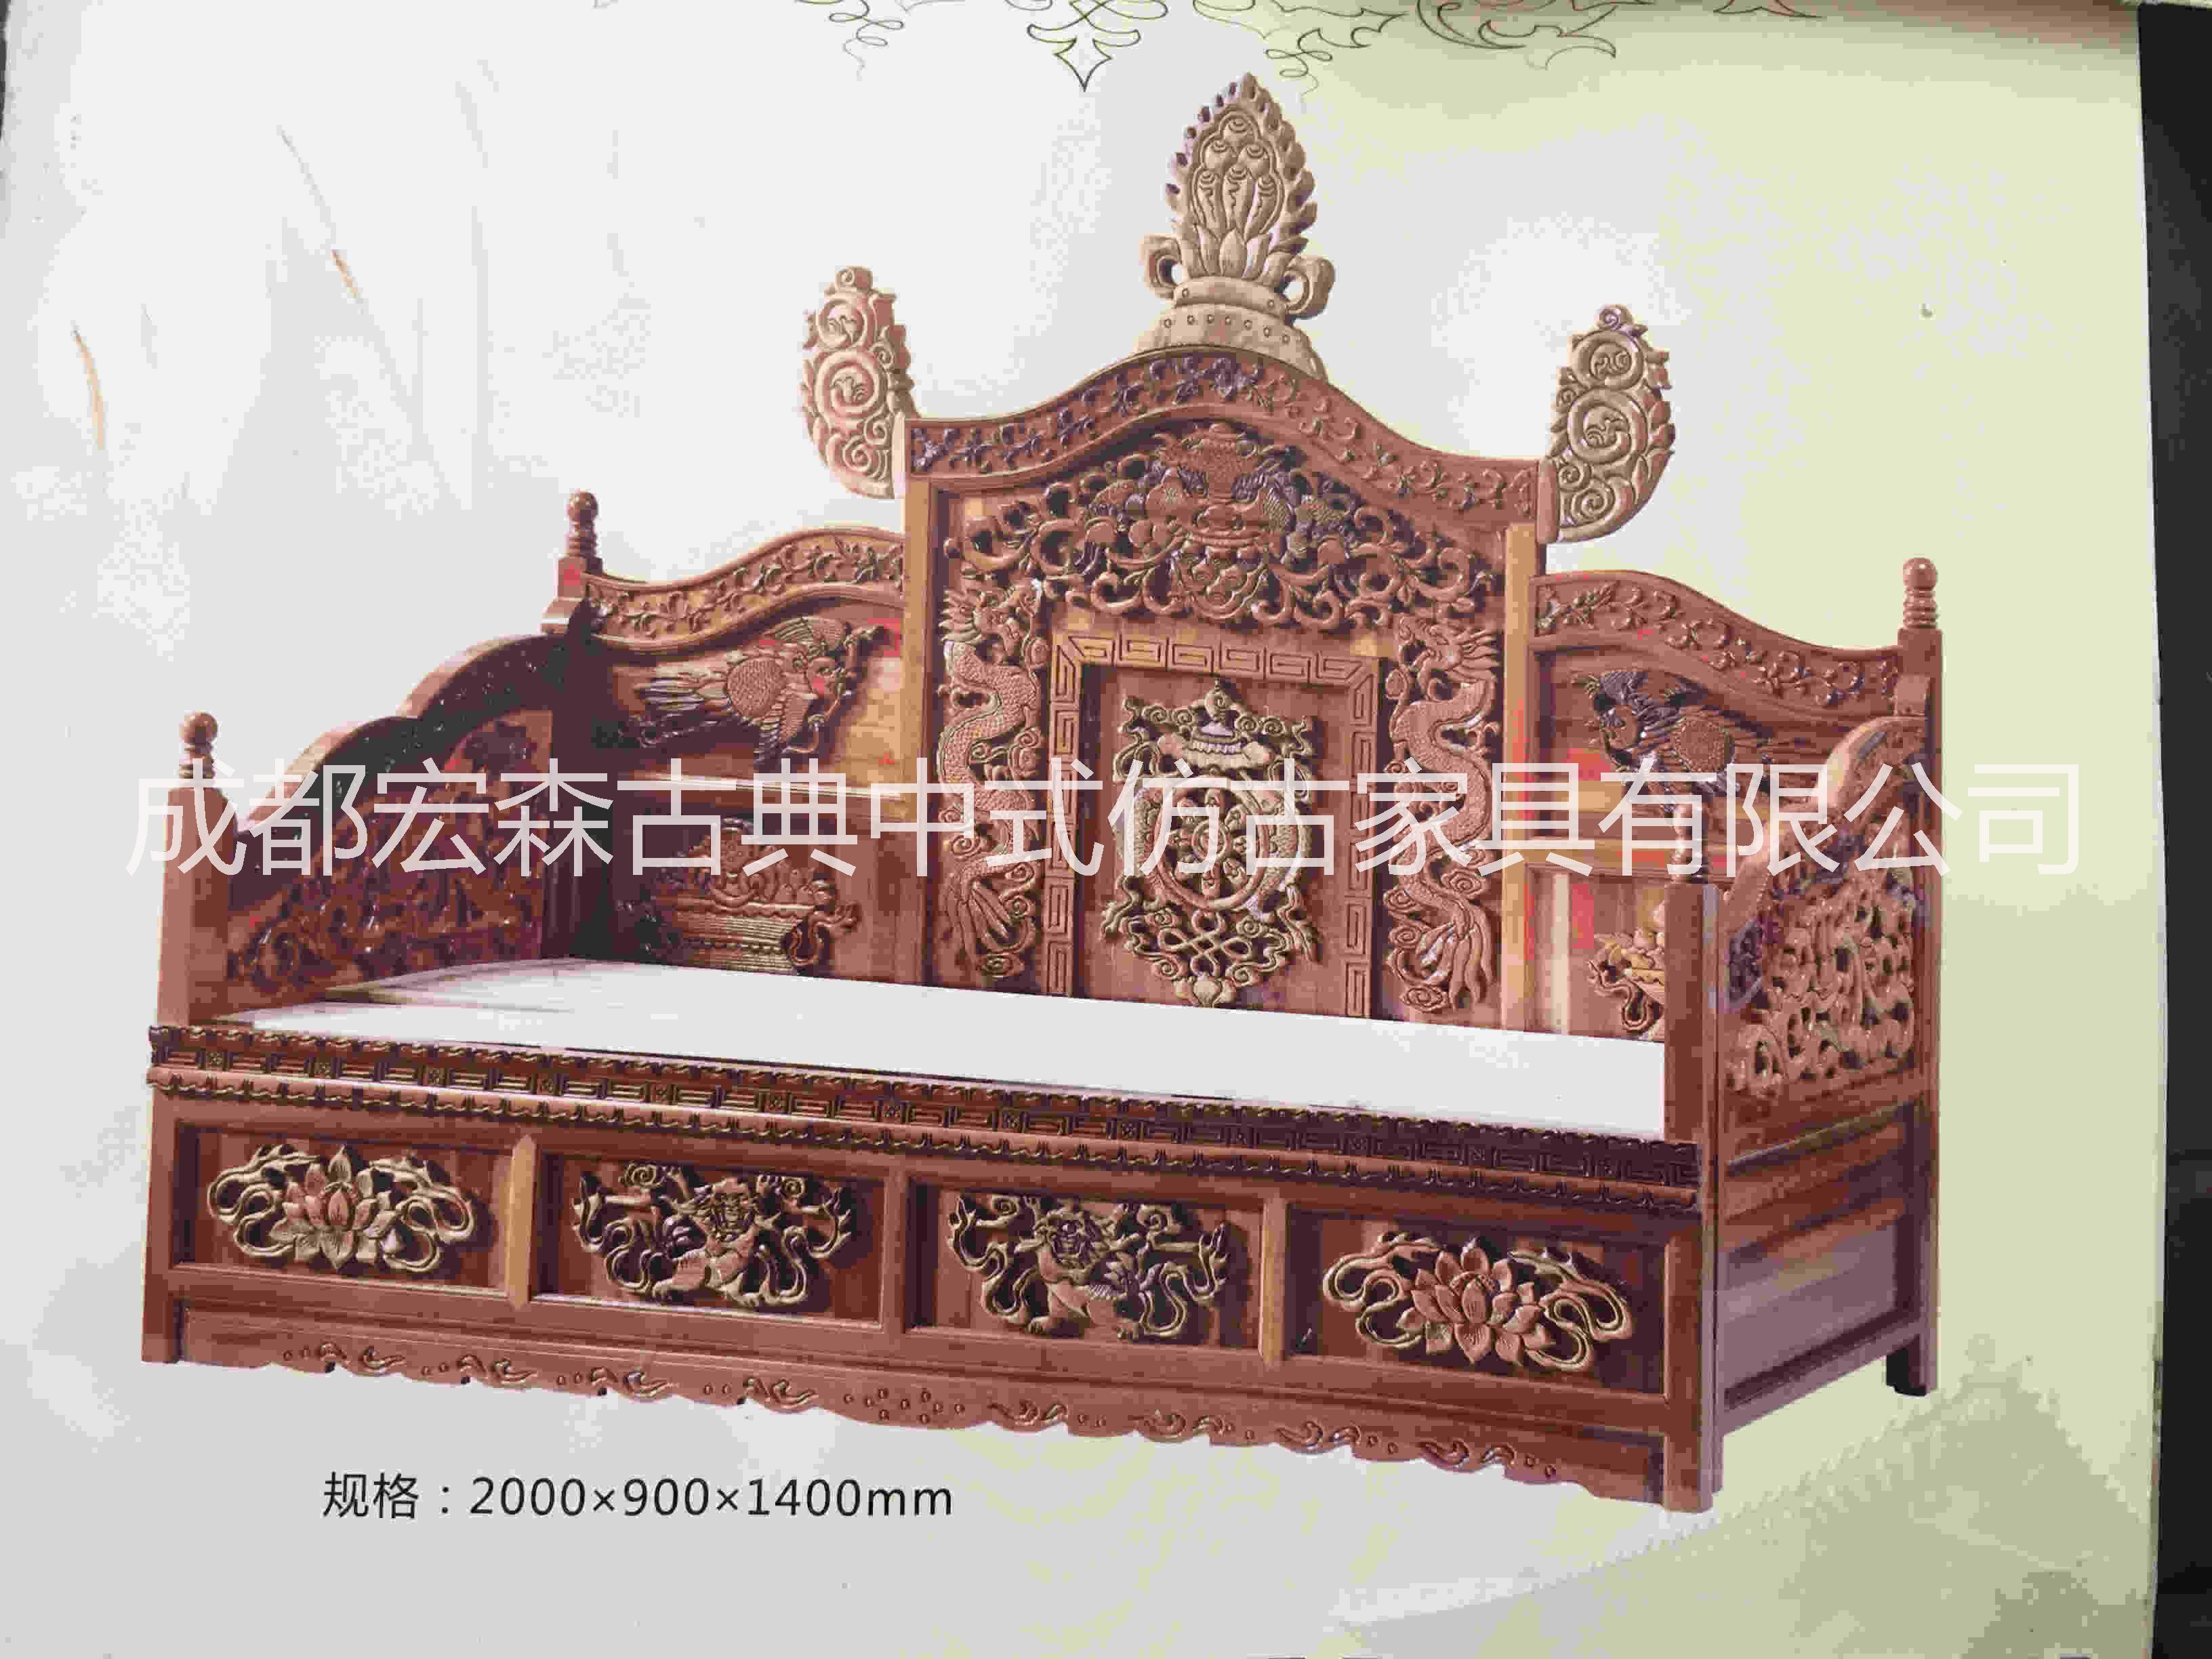 成都藏式沙发藏式床藏式茶几佛龛供应用于藏式风格场所的成都藏式沙发藏式床藏式茶几佛龛